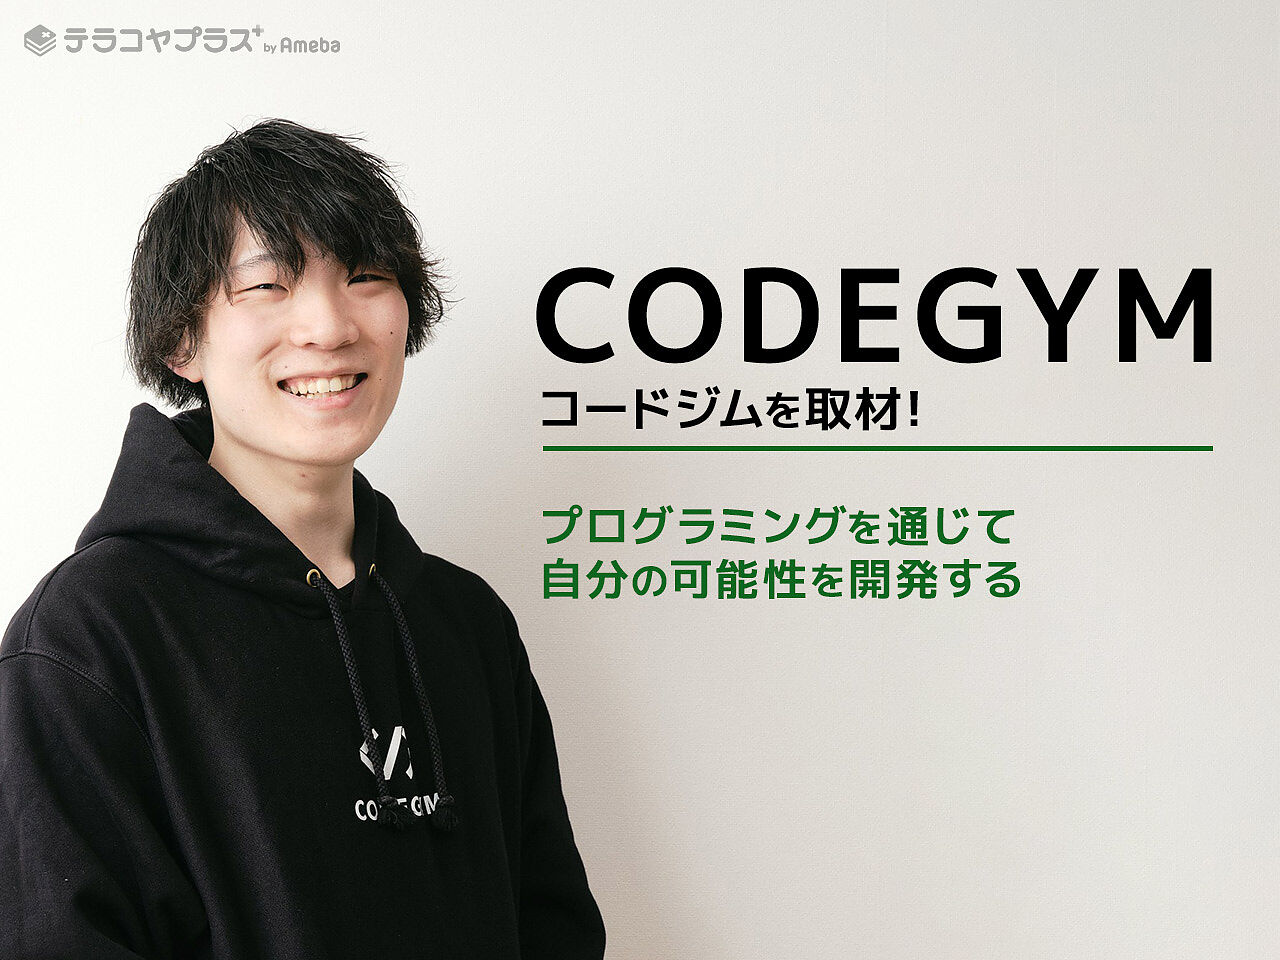 「CODEGYM コードジム」が提供するハイレベルなプログラミング教育とは？の画像